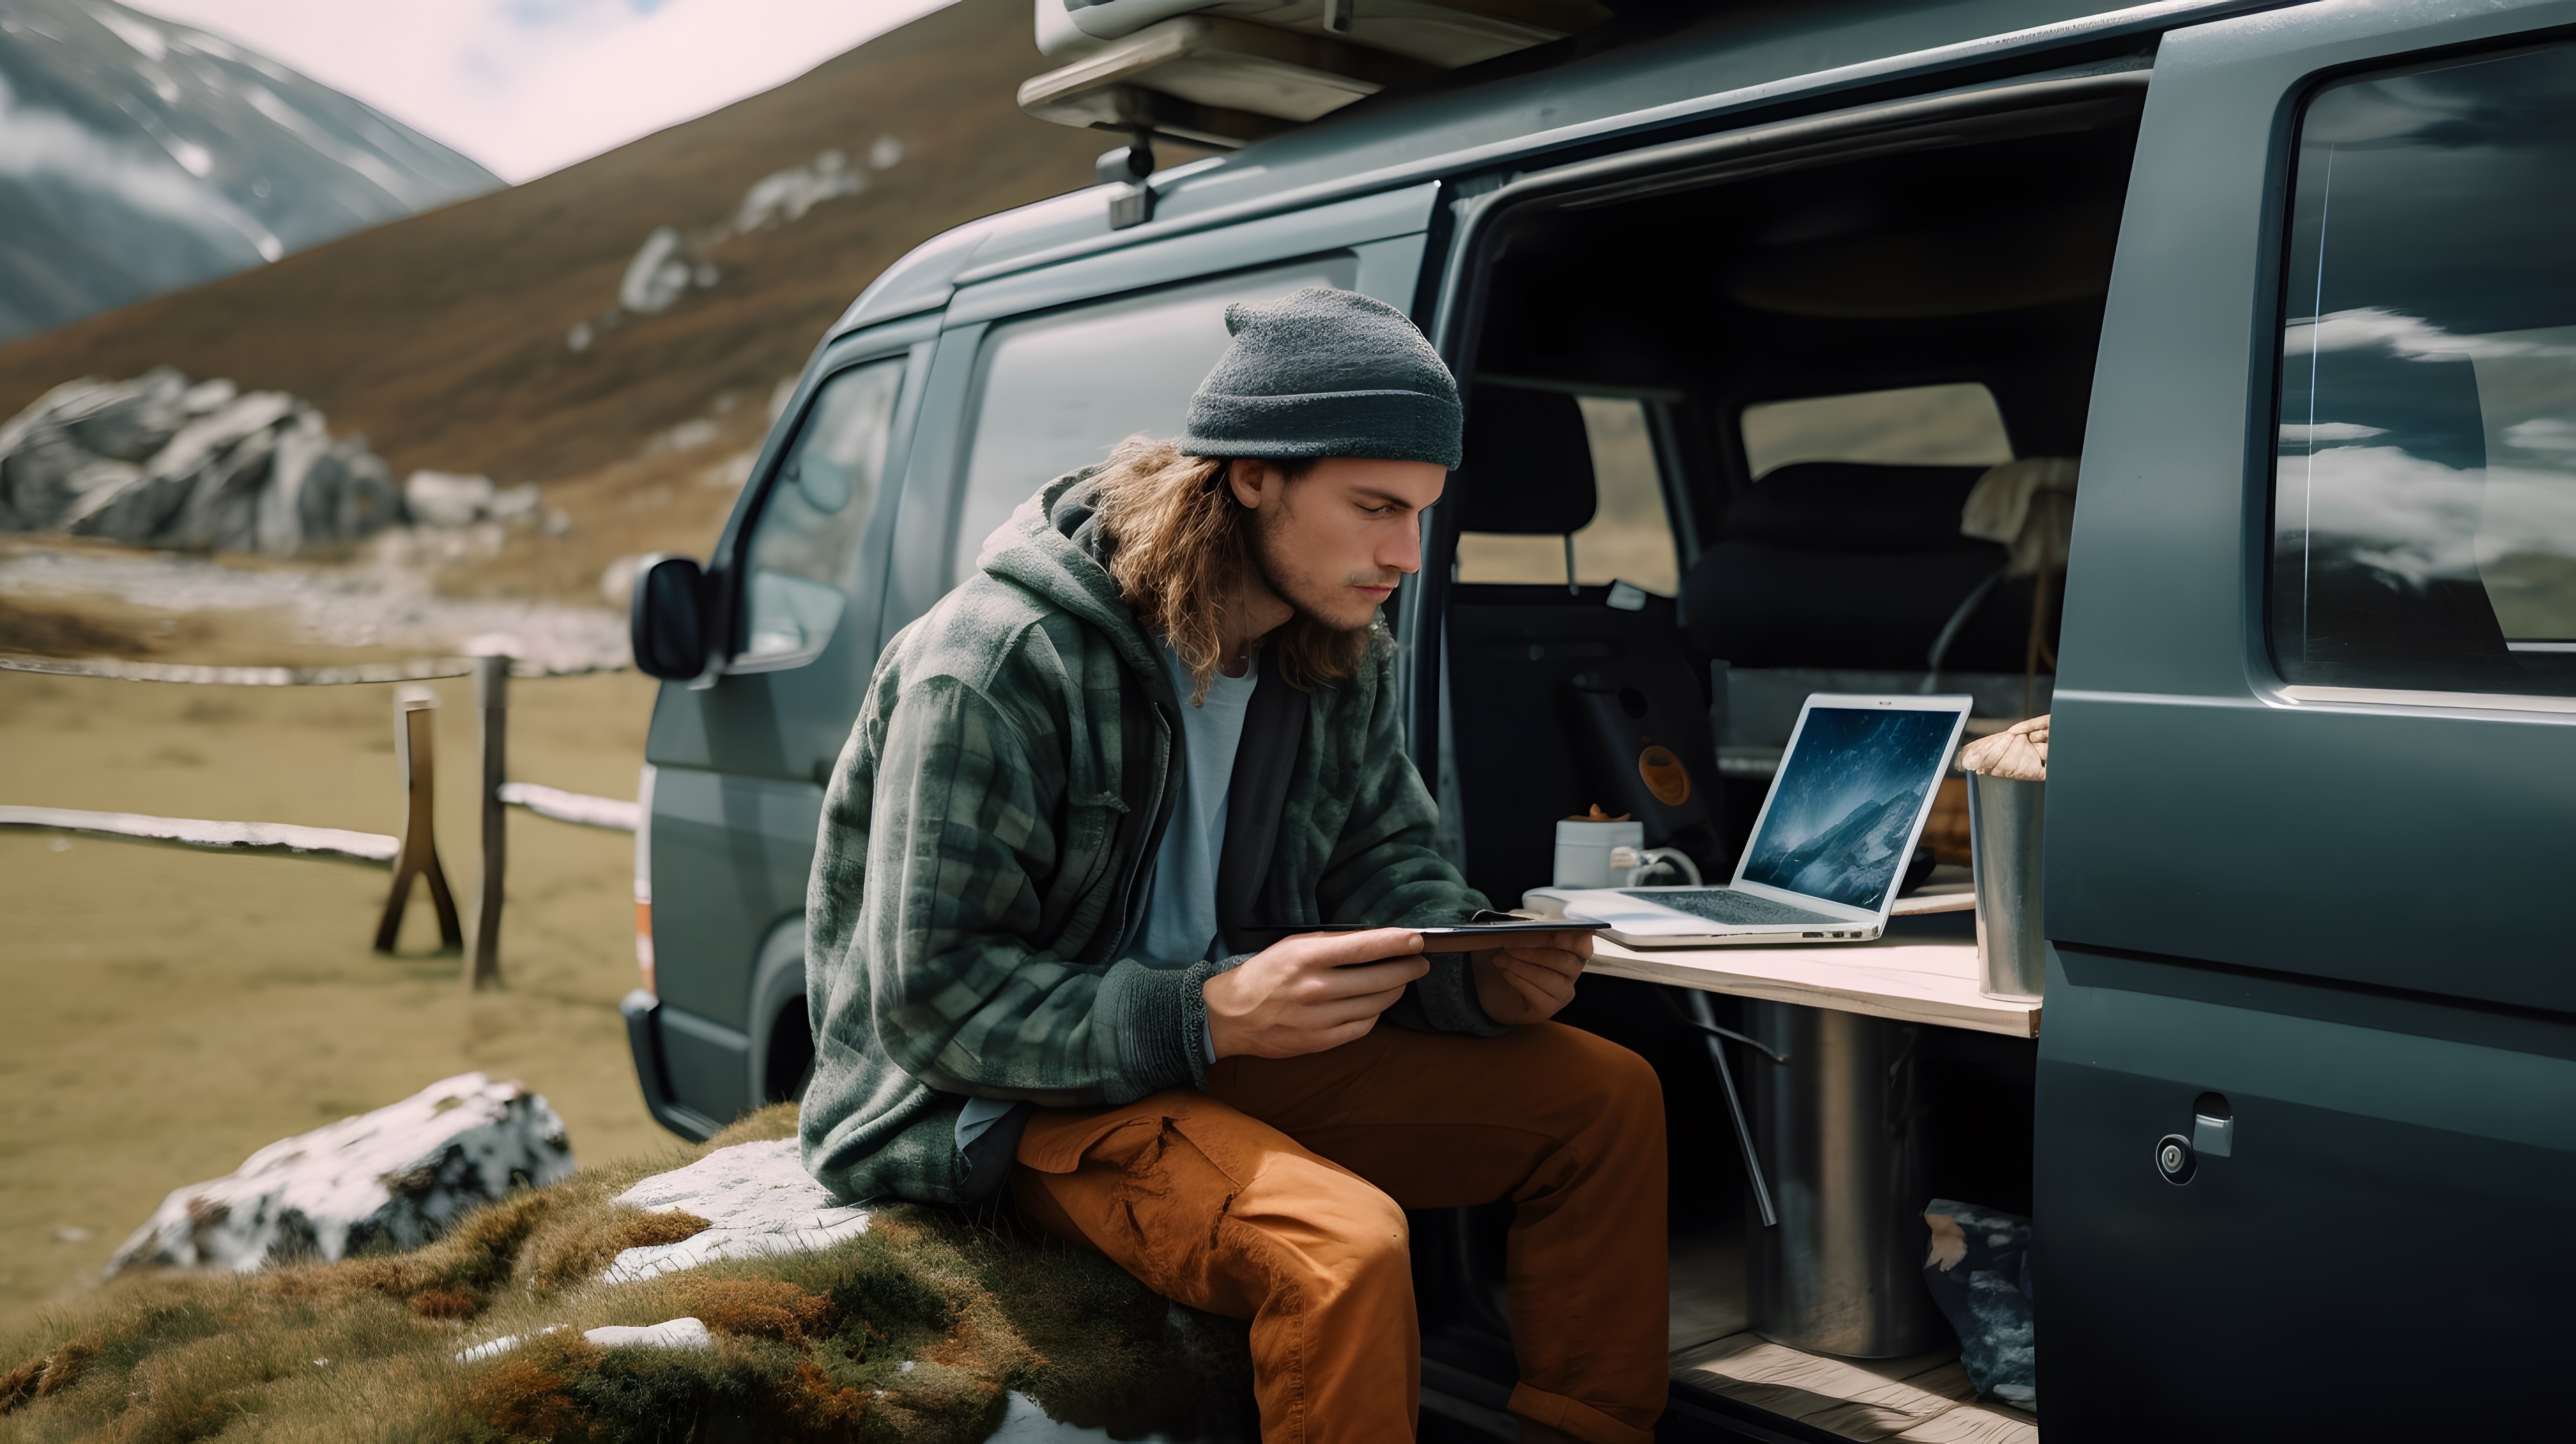 Ein Mann arbeitet am Laptop im Camper in den Bergen: Digitale Nomaden wie er sind es gewohnt, virtuelle Arbeit im Mobile Office im Ausland zu leisten.